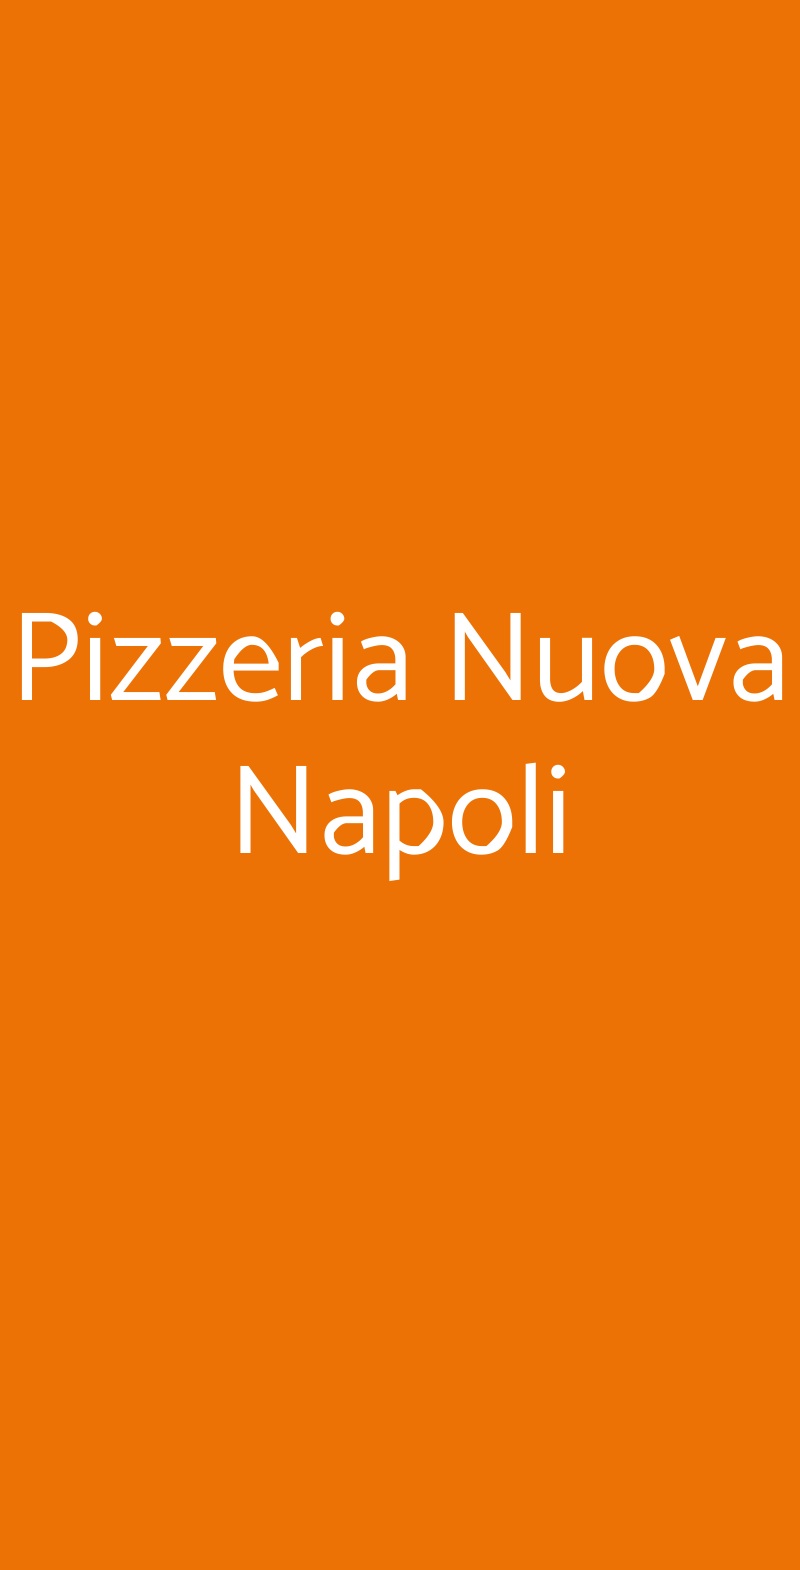 Pizzeria Nuova Napoli Rovereto menù 1 pagina